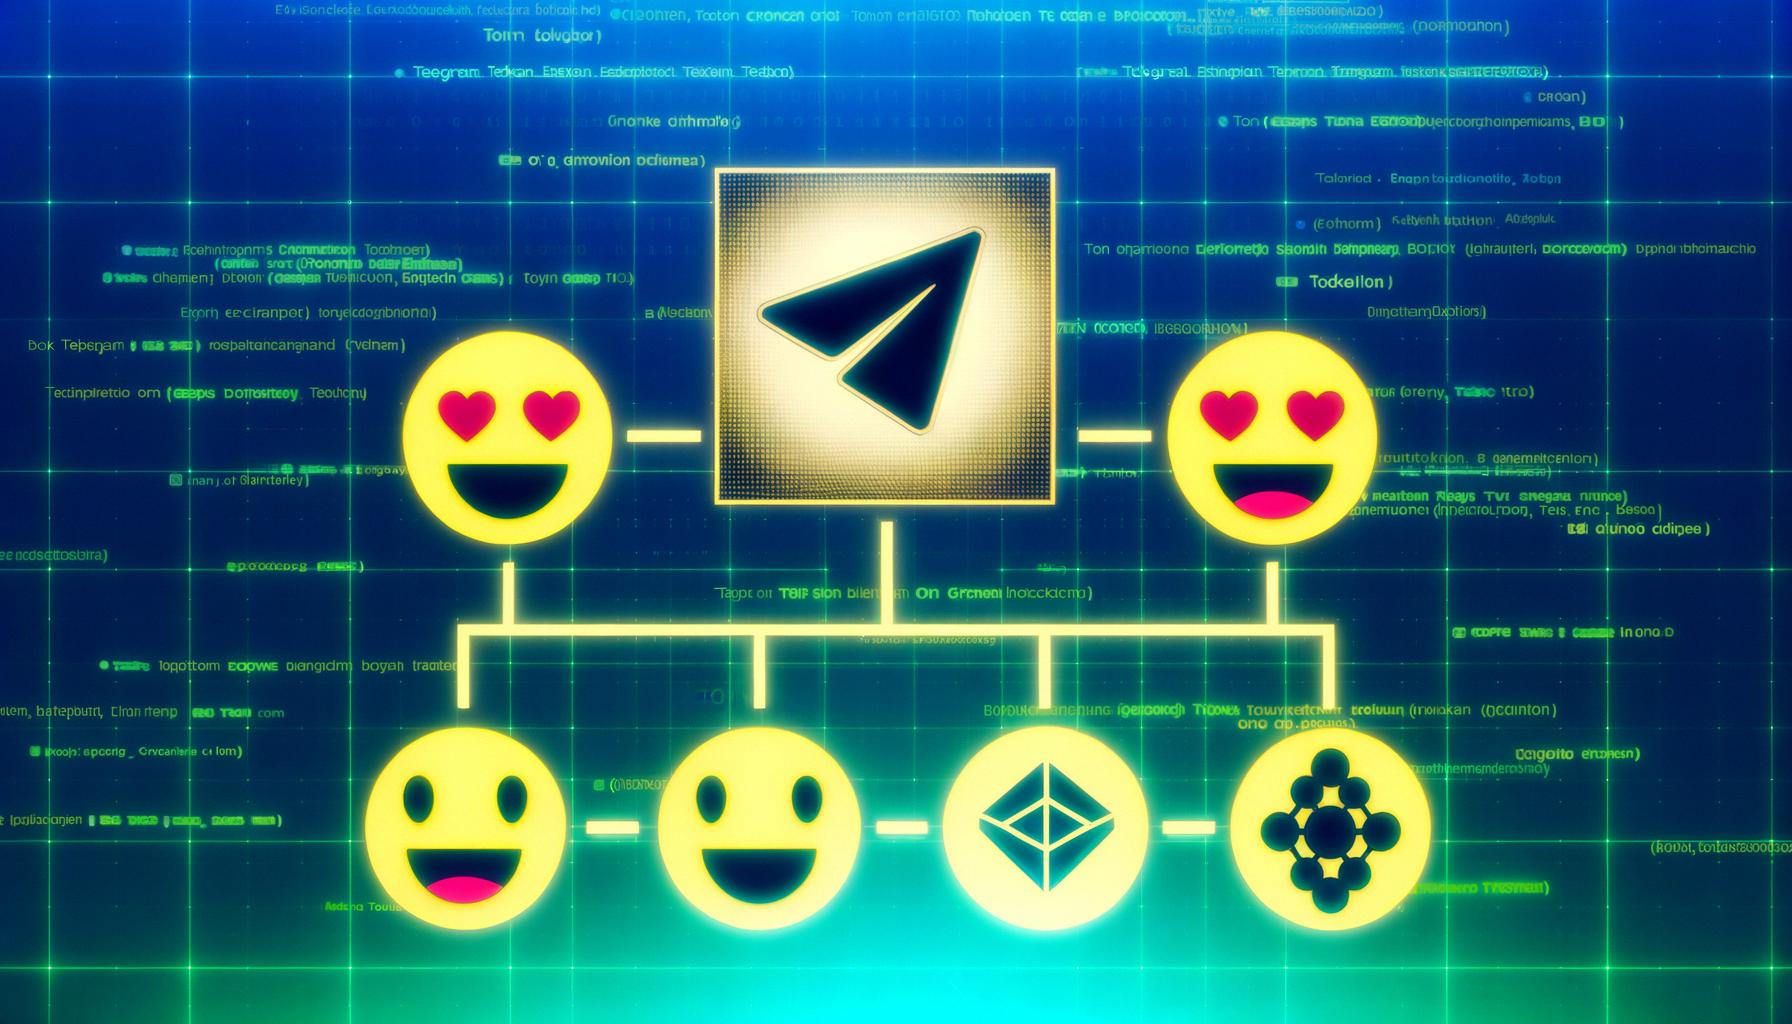 Telegram tokenizes emojis on TON blockchain